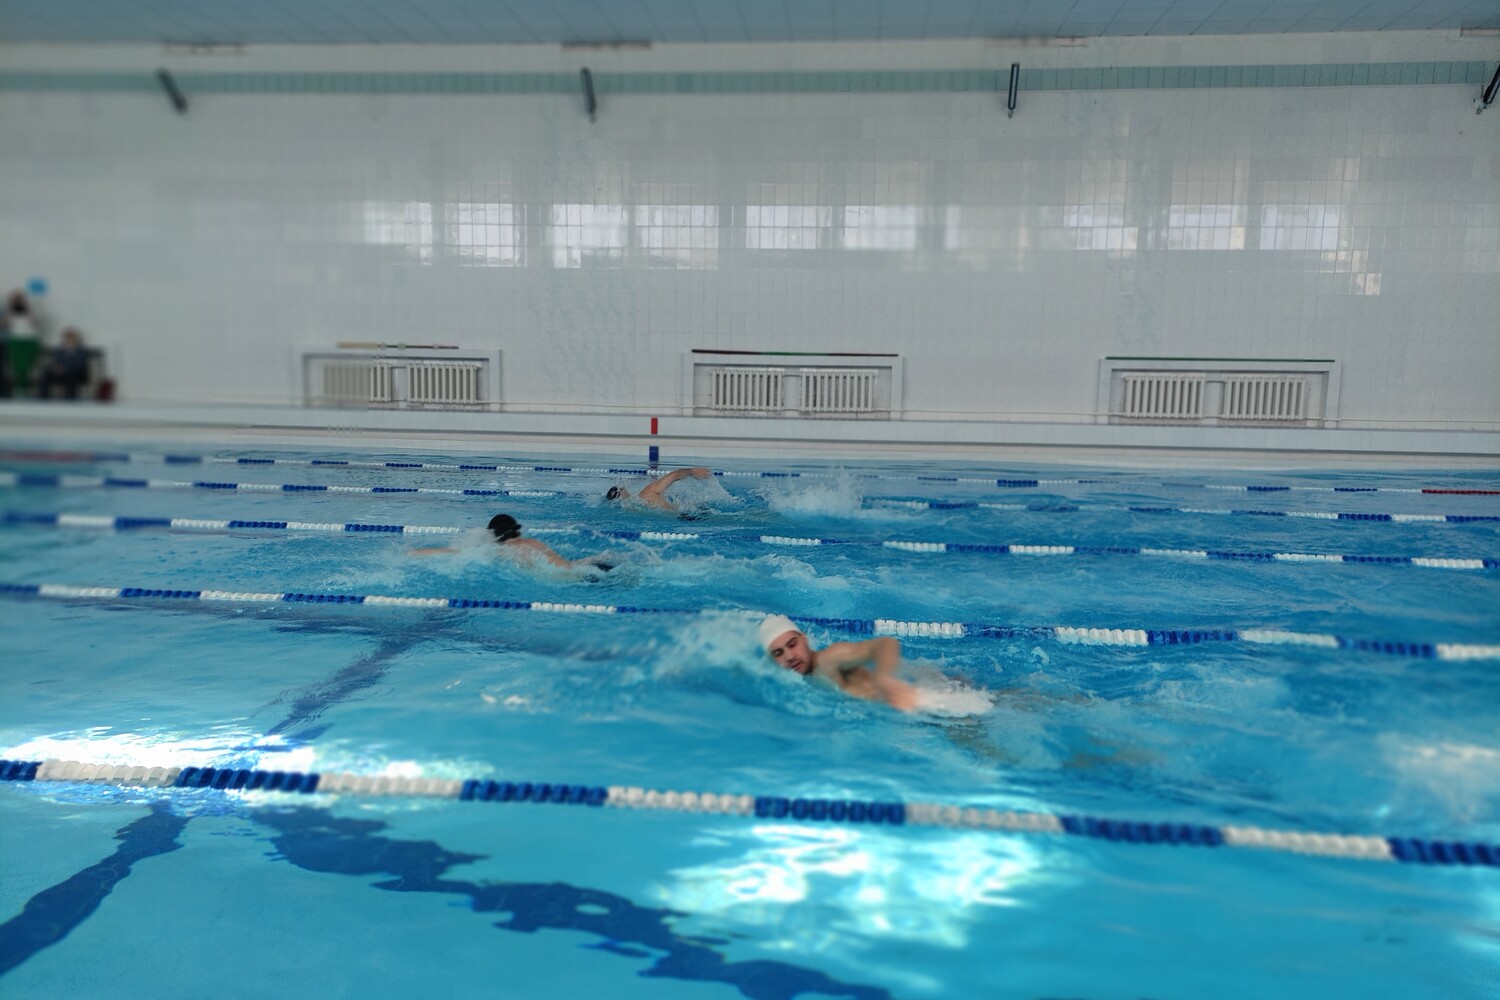 Соревнования по плаванию между структурными подразделениями прошли на Губахинском коксе. Стройсервис